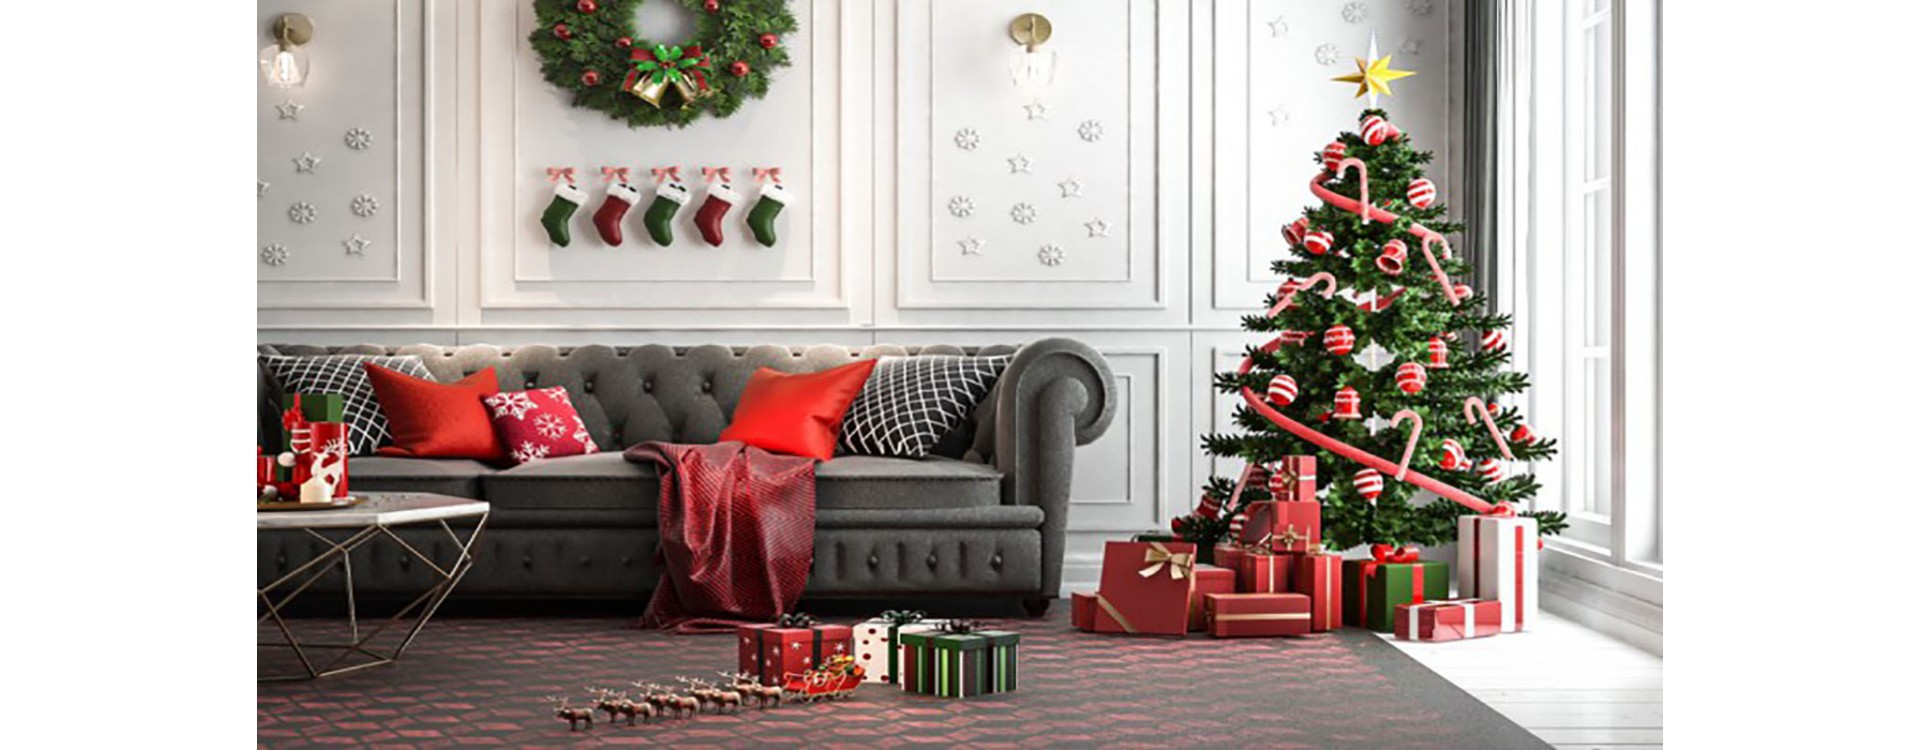 Regali di Natale per la casa: design ed utilità | Kasa - Store